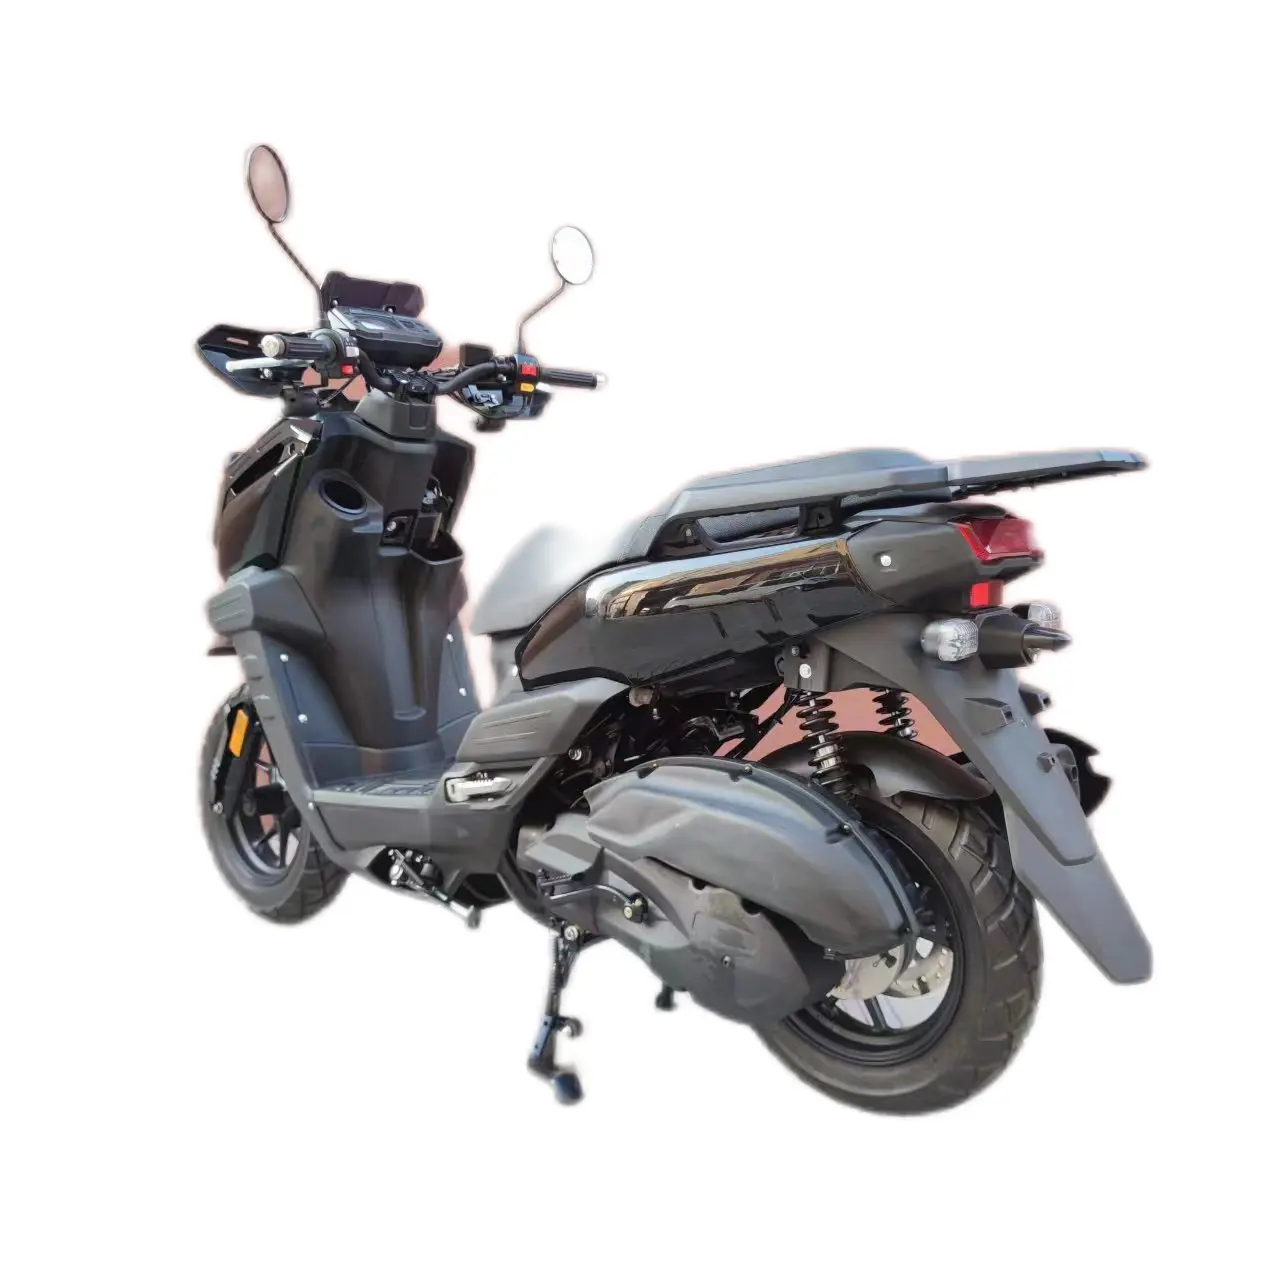 공장 생산 가스 오토바이 150cc 저렴한 중국 스포츠 가솔린 오토바이 다른 오토바이 스쿠터 150cc